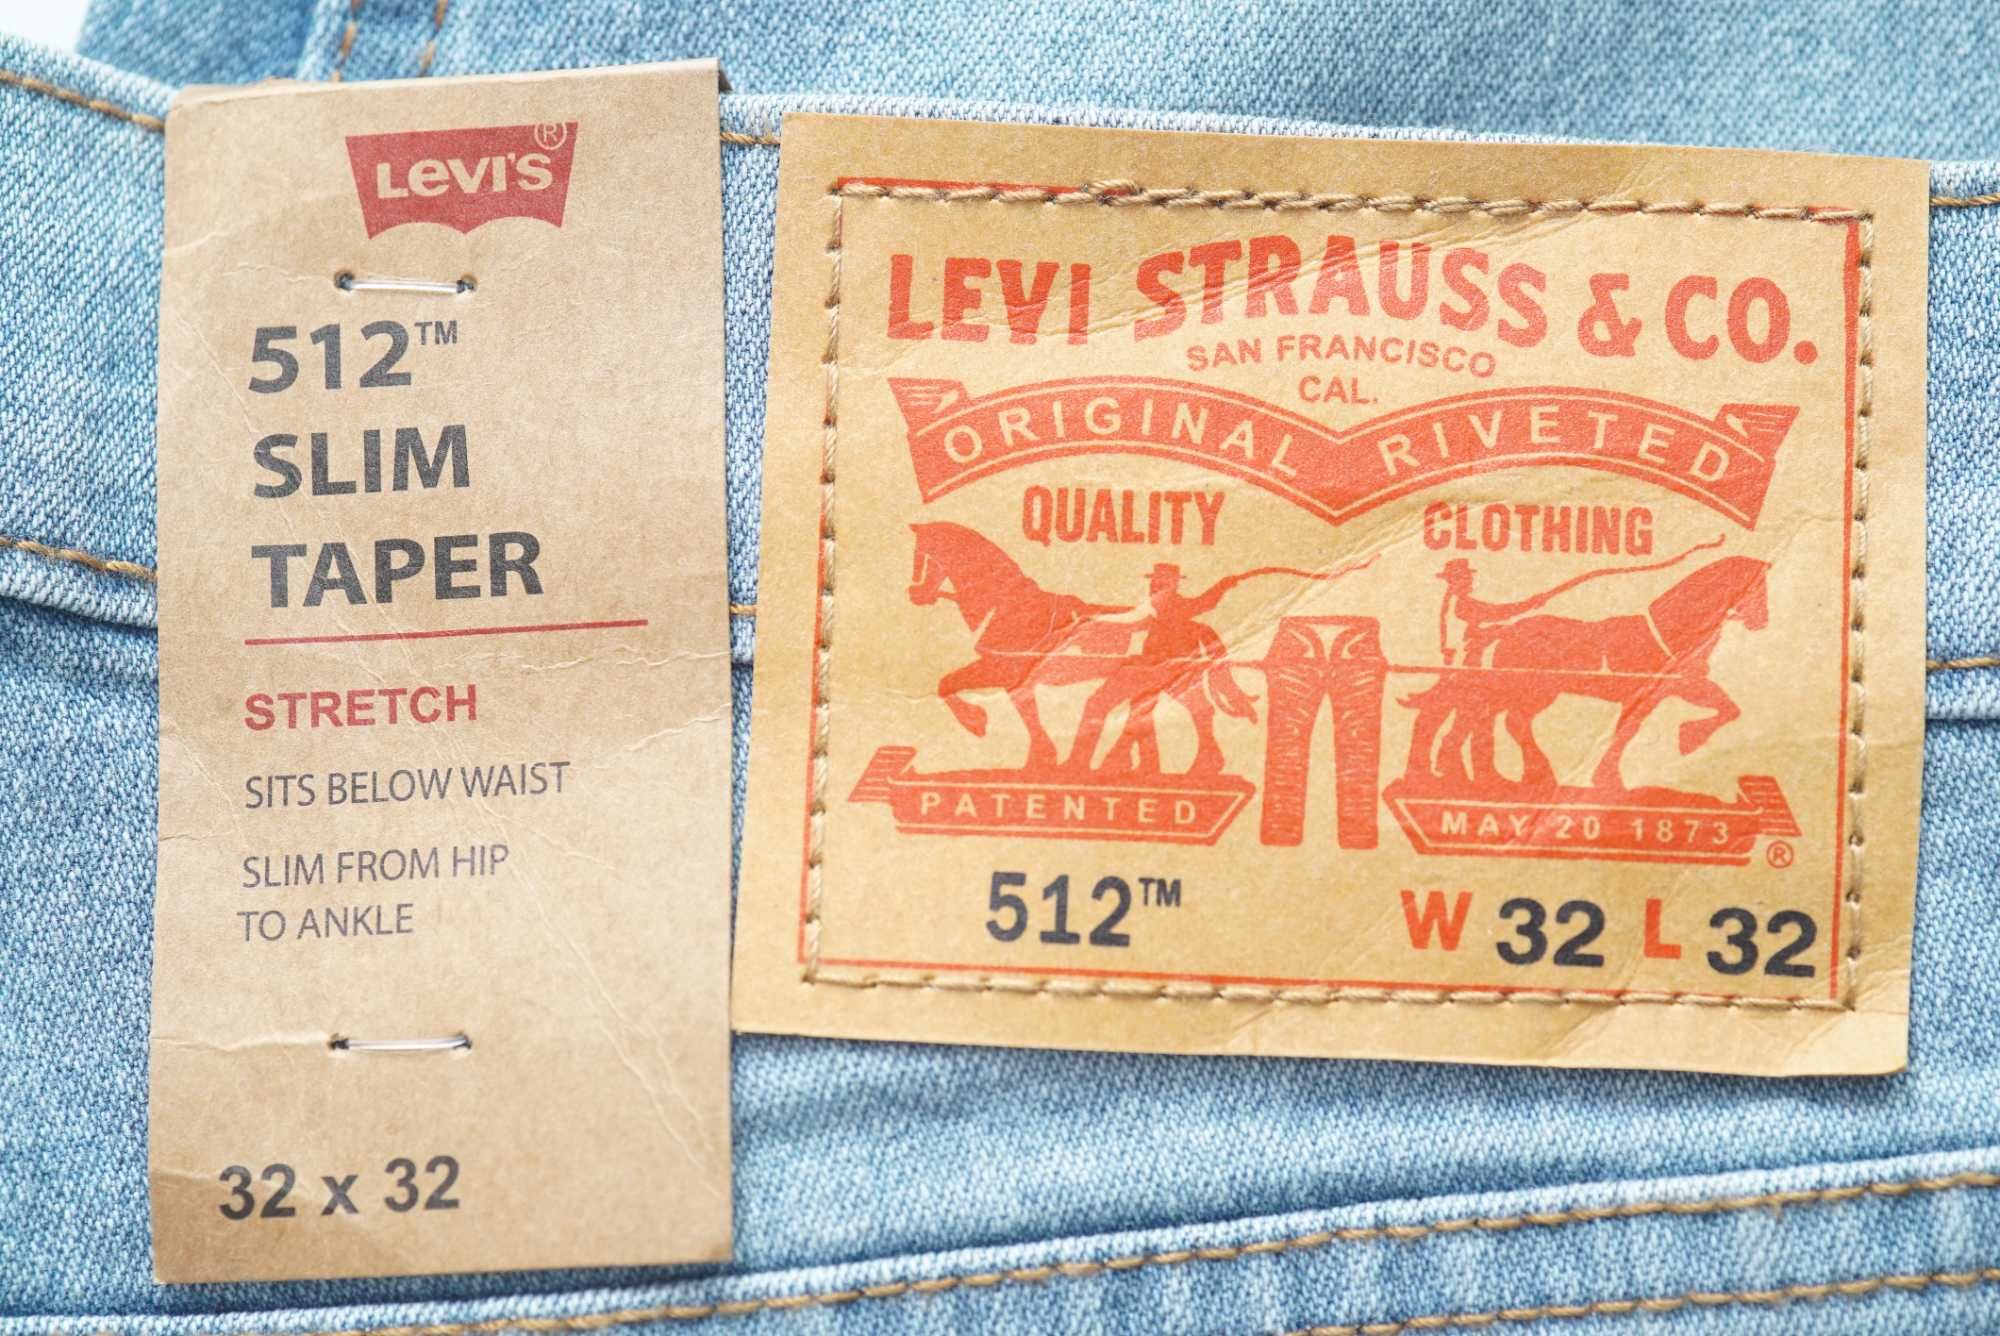 Мужские джинсы LEVI'S голубого цвета (512 slim taper)